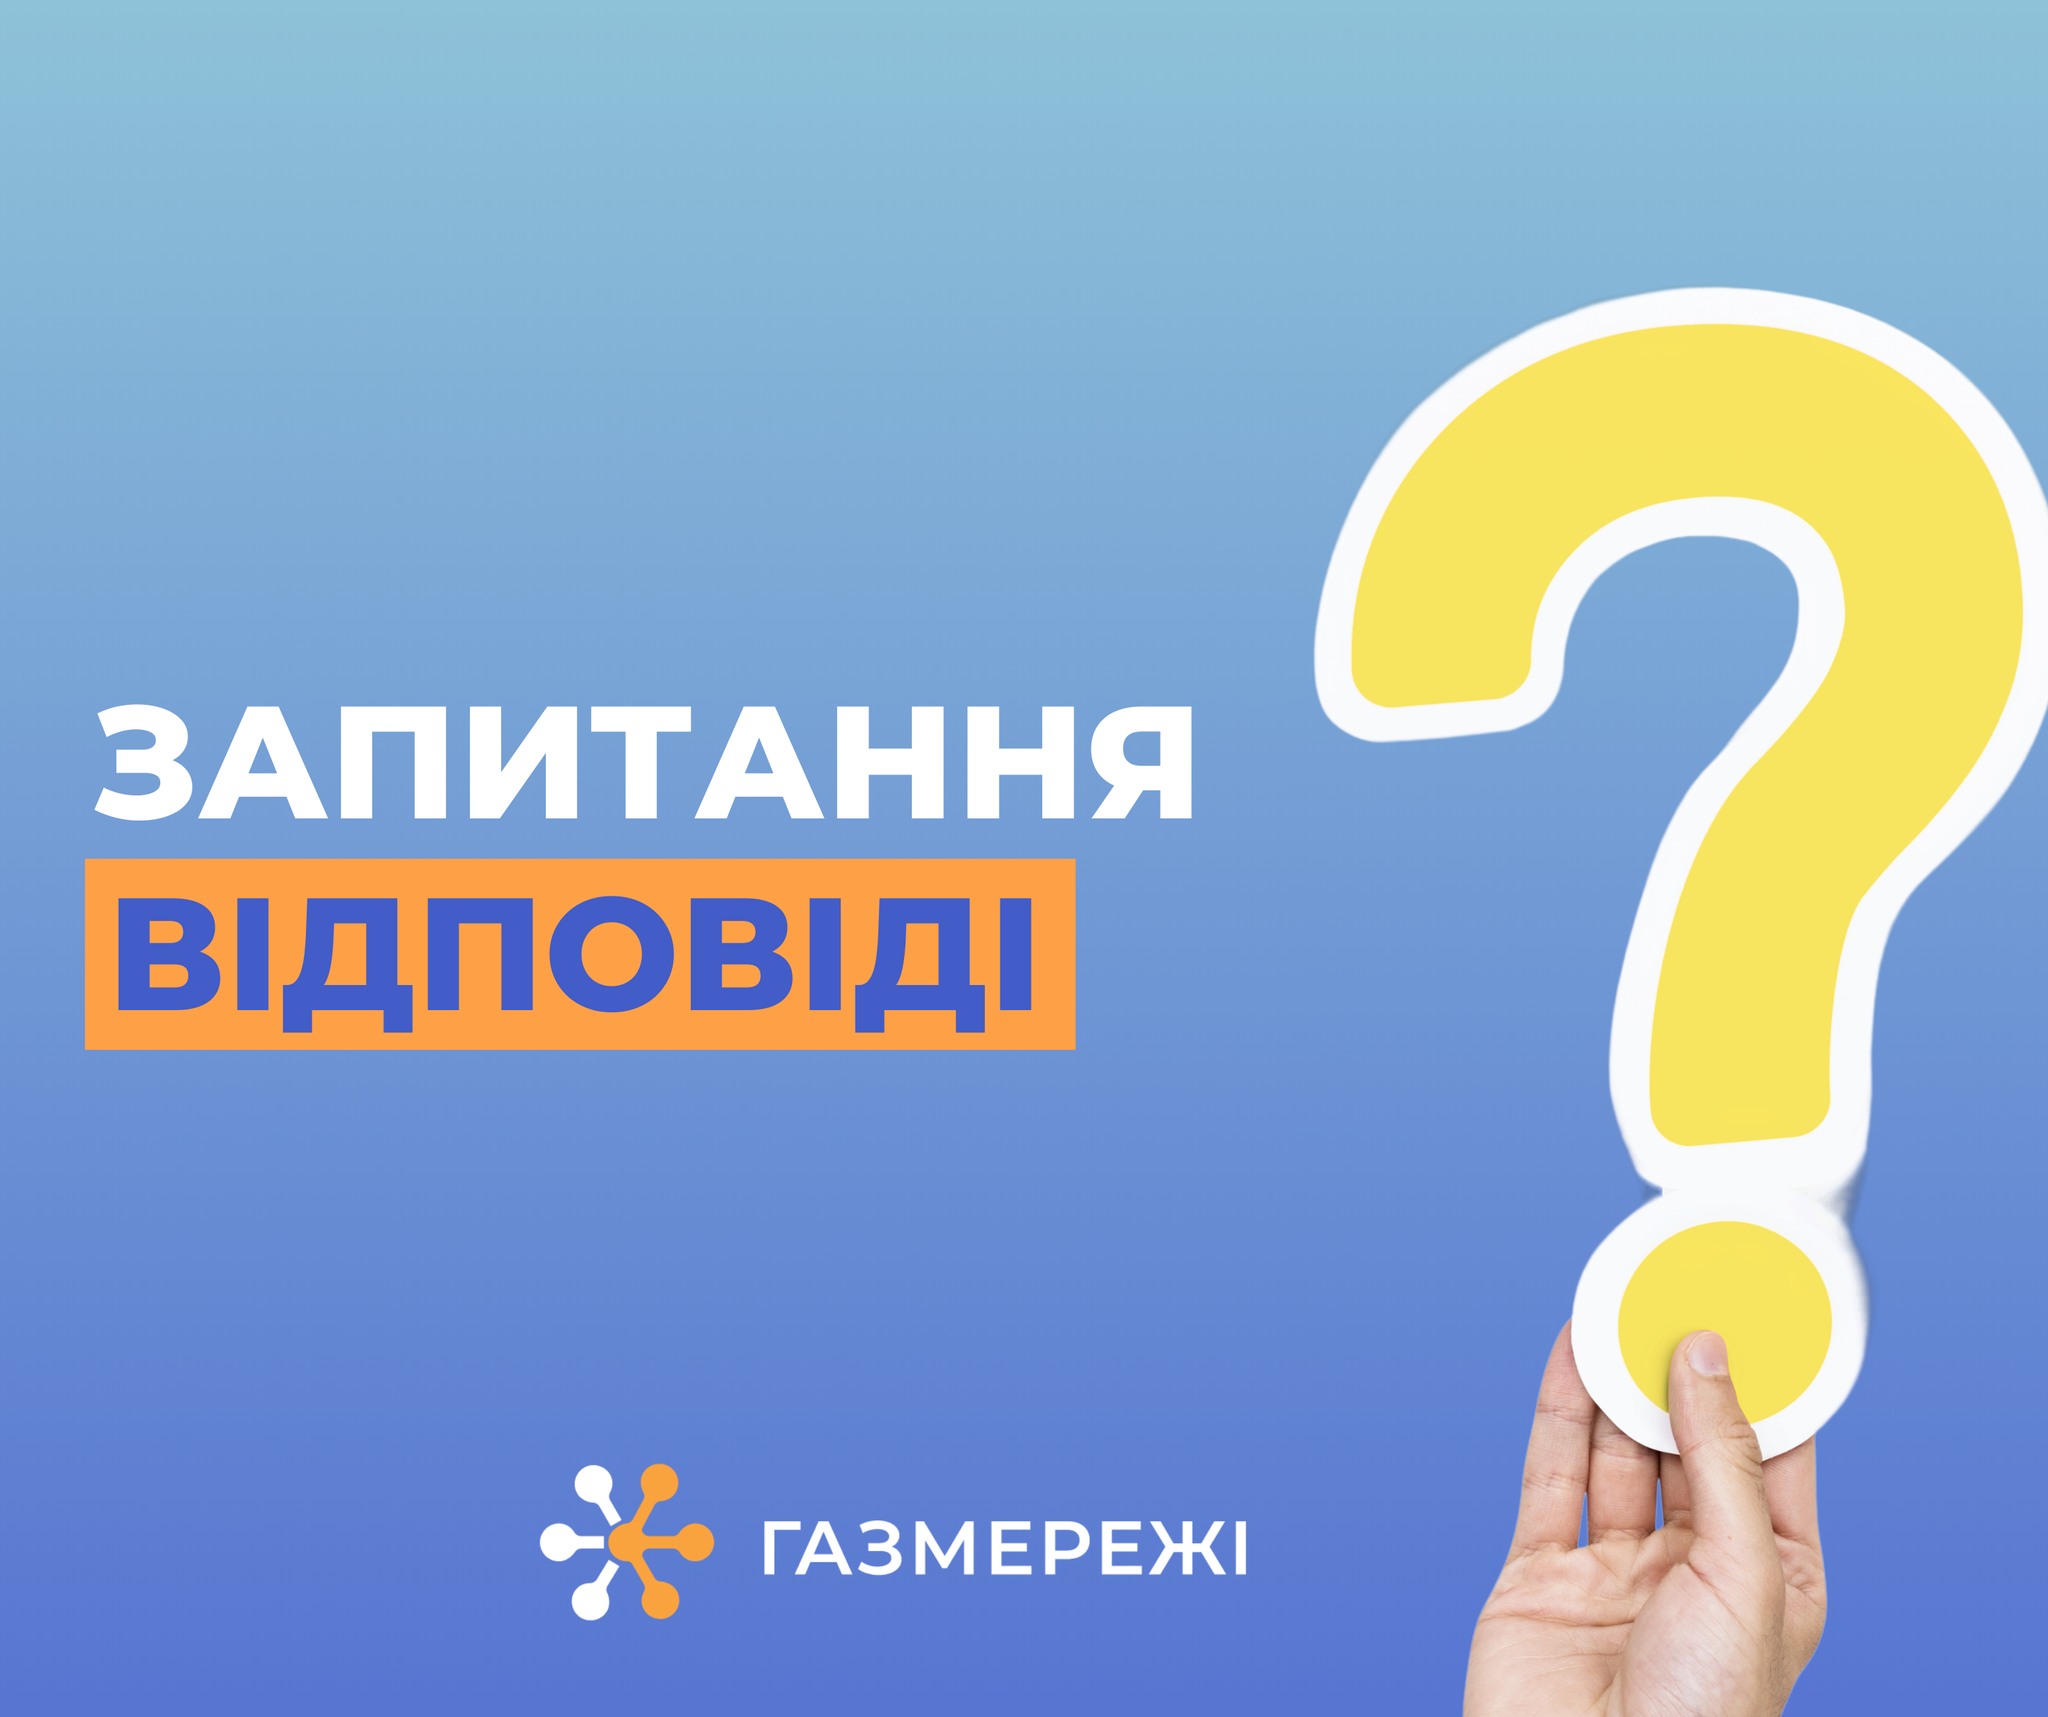 Чому у Дніпропетровській області працюють три оператори газорозподільних мереж?